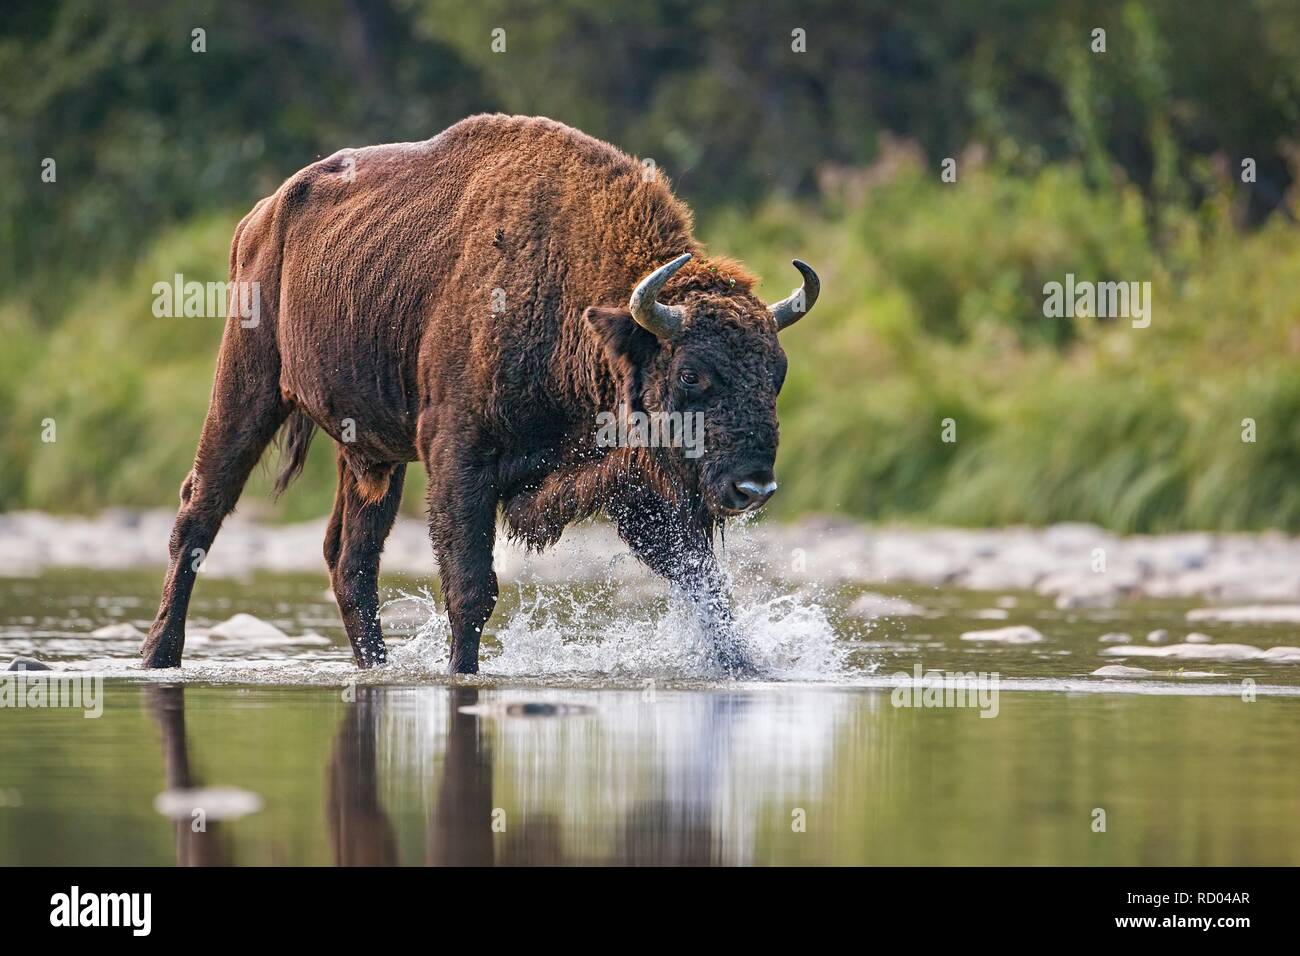 Bull énorme d'bison, Bison bonasus, traversant une rivière. Animal sauvage majestueux aux projections d'eau avec des gouttelettes. Scène de la faune dynamiques Banque D'Images